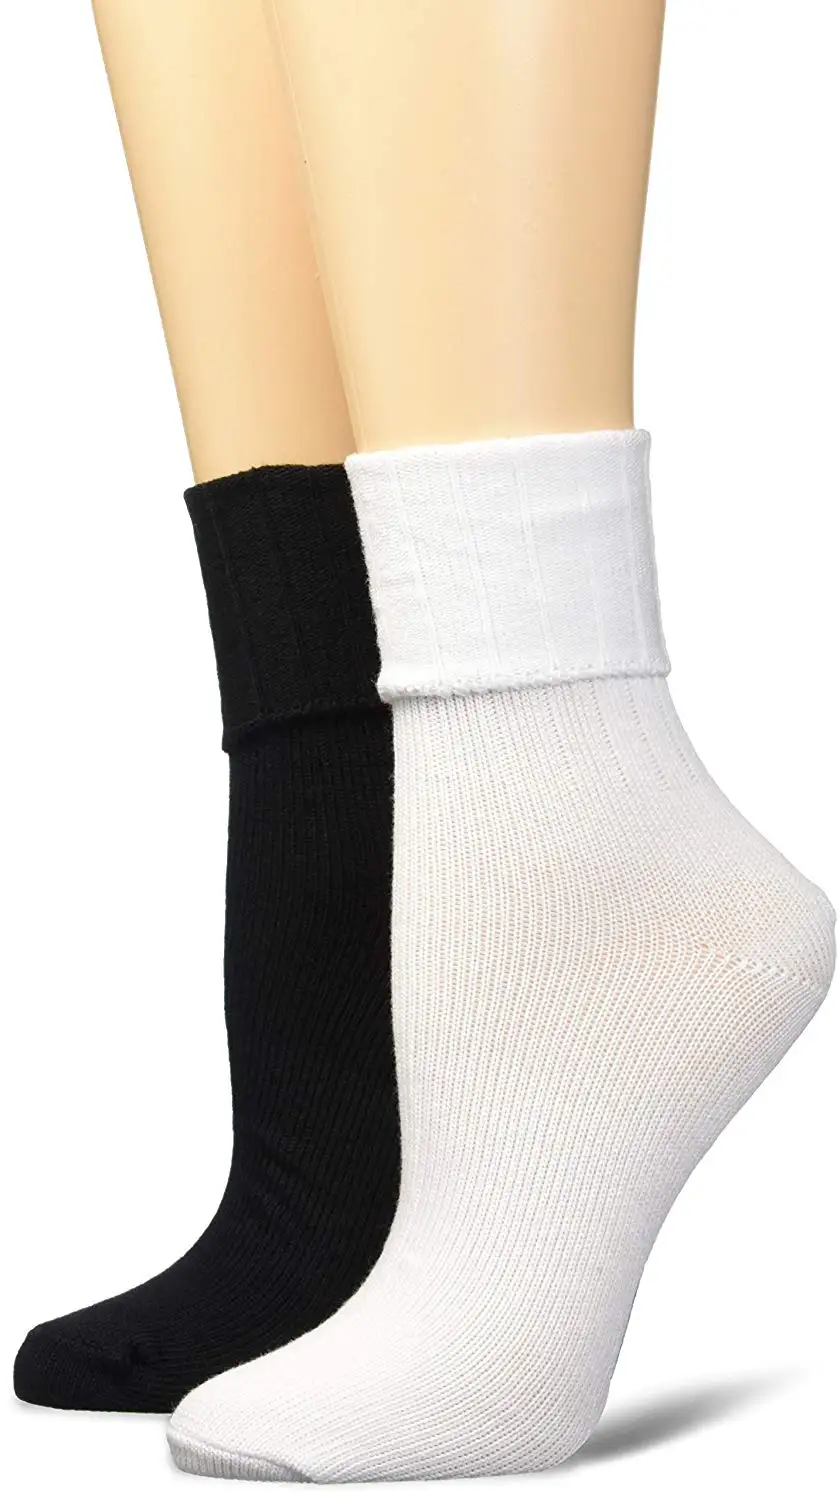 Cheap Keds Socks, find Keds Socks deals on line at Alibaba.com